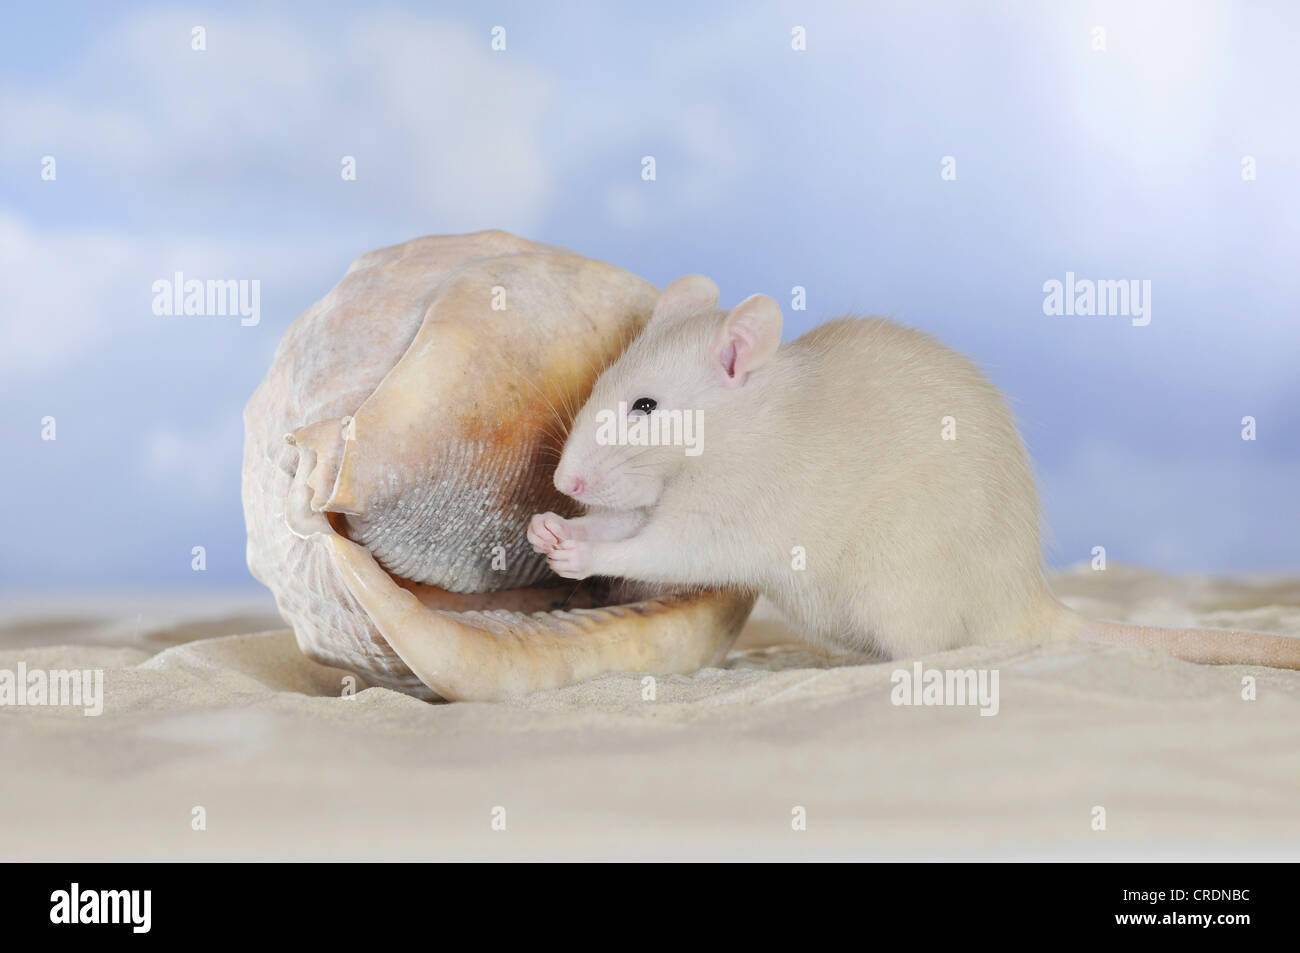 Voglia di ratto, color crema, seduto sulla sabbia accanto a una conchiglia, pulizia le sue zampe Foto Stock